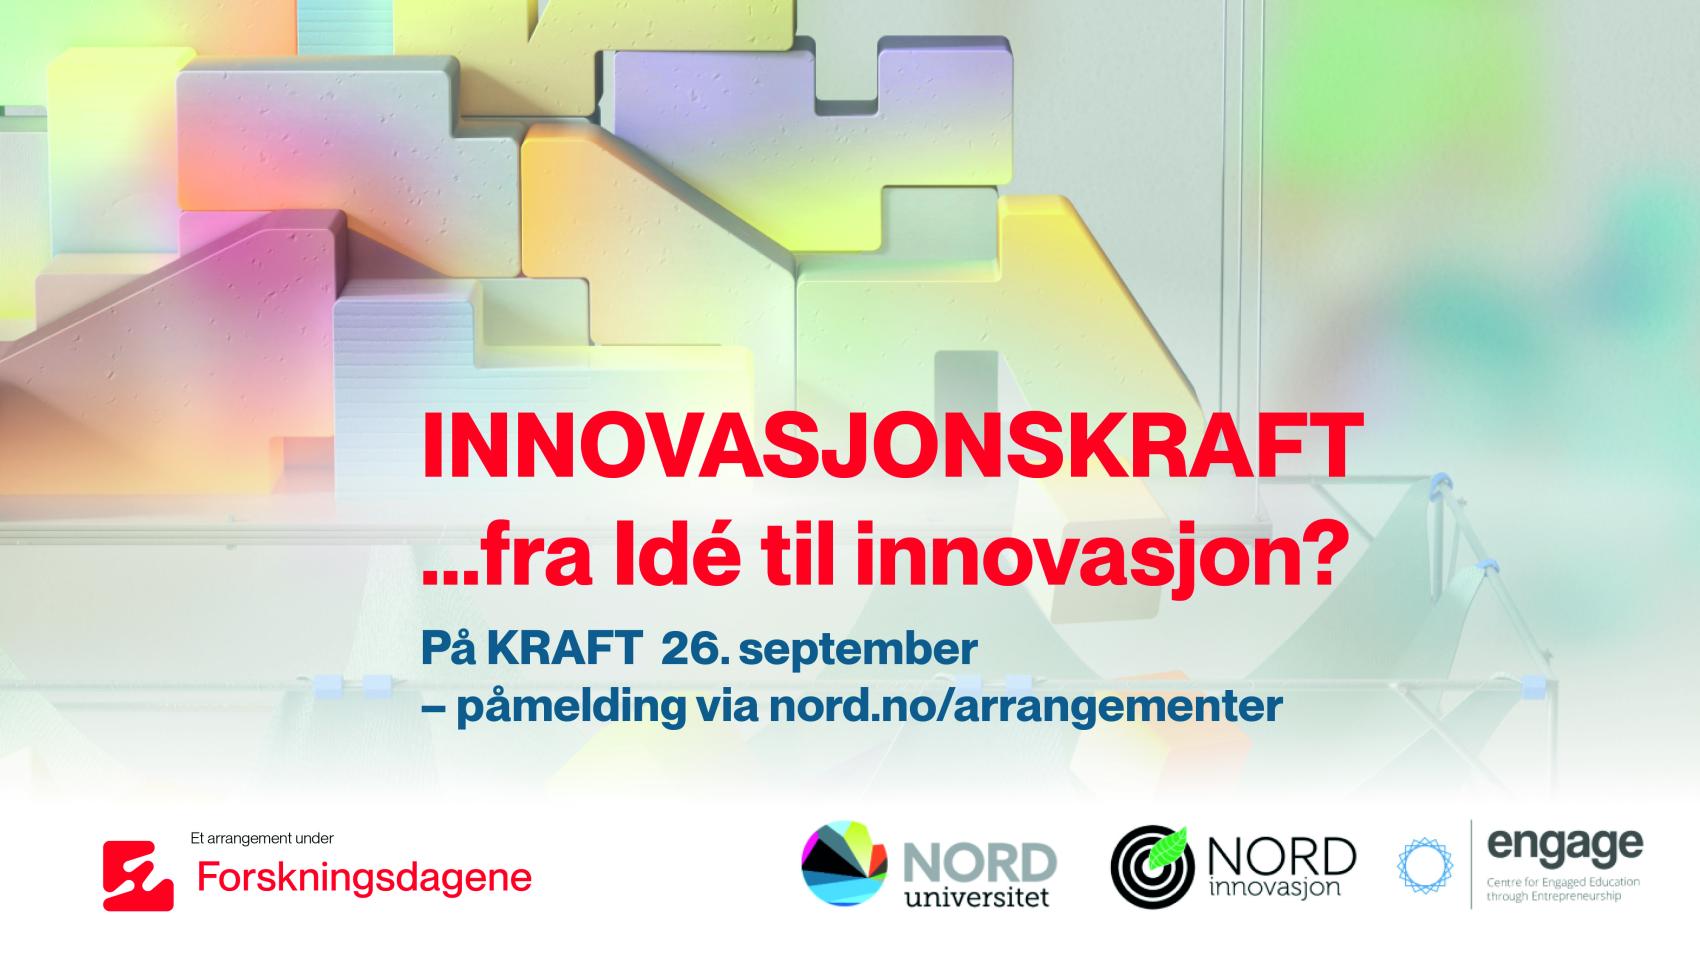 Reklameplakat med teksten: "Innovasjonskraft... fra idé til innovasjon? På Kraft 26. september - påmelding via nord.no/arrangementer". Nederst ligger logoene til Nord universitet, Nord innovasjon og Engage.